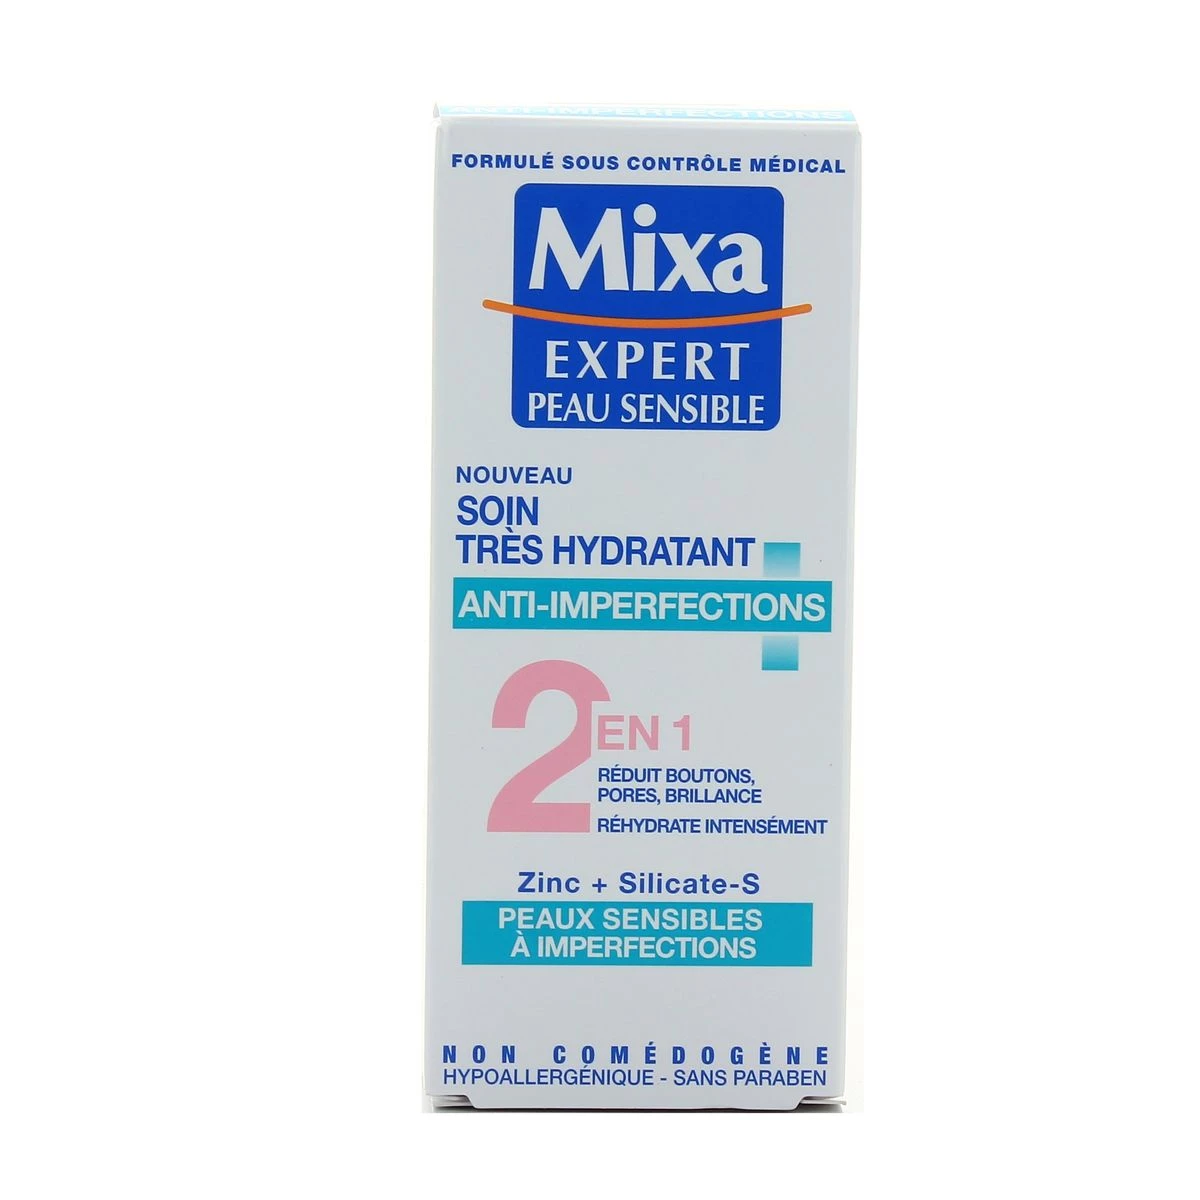 Soin Très Hydratant Anti-Imperfections 2 en 1 Peaux Sensibles à Imperfections, 50ml - MIXA